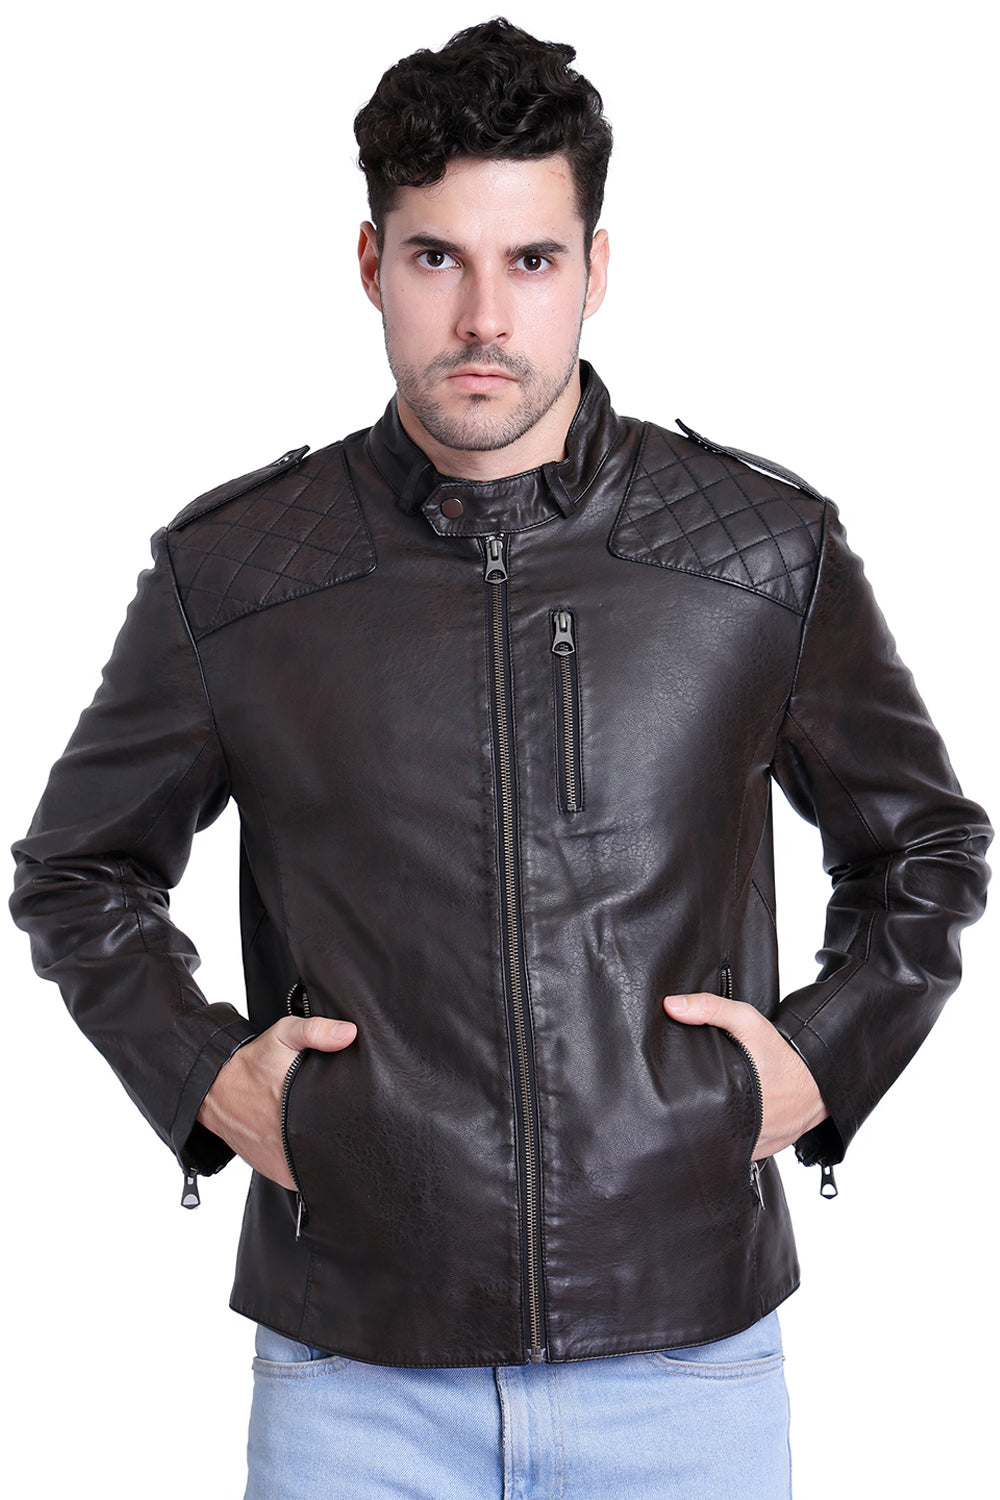 Justanned Brunette Leather Jacket